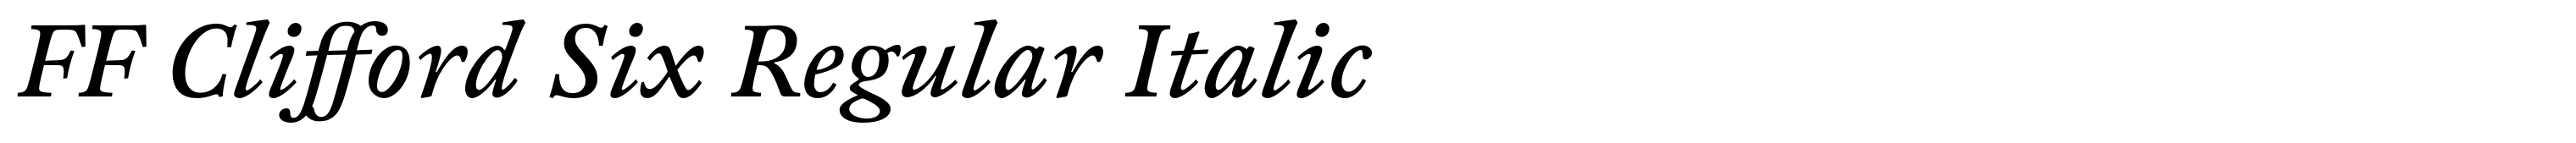 FF Clifford Six Regular Italic